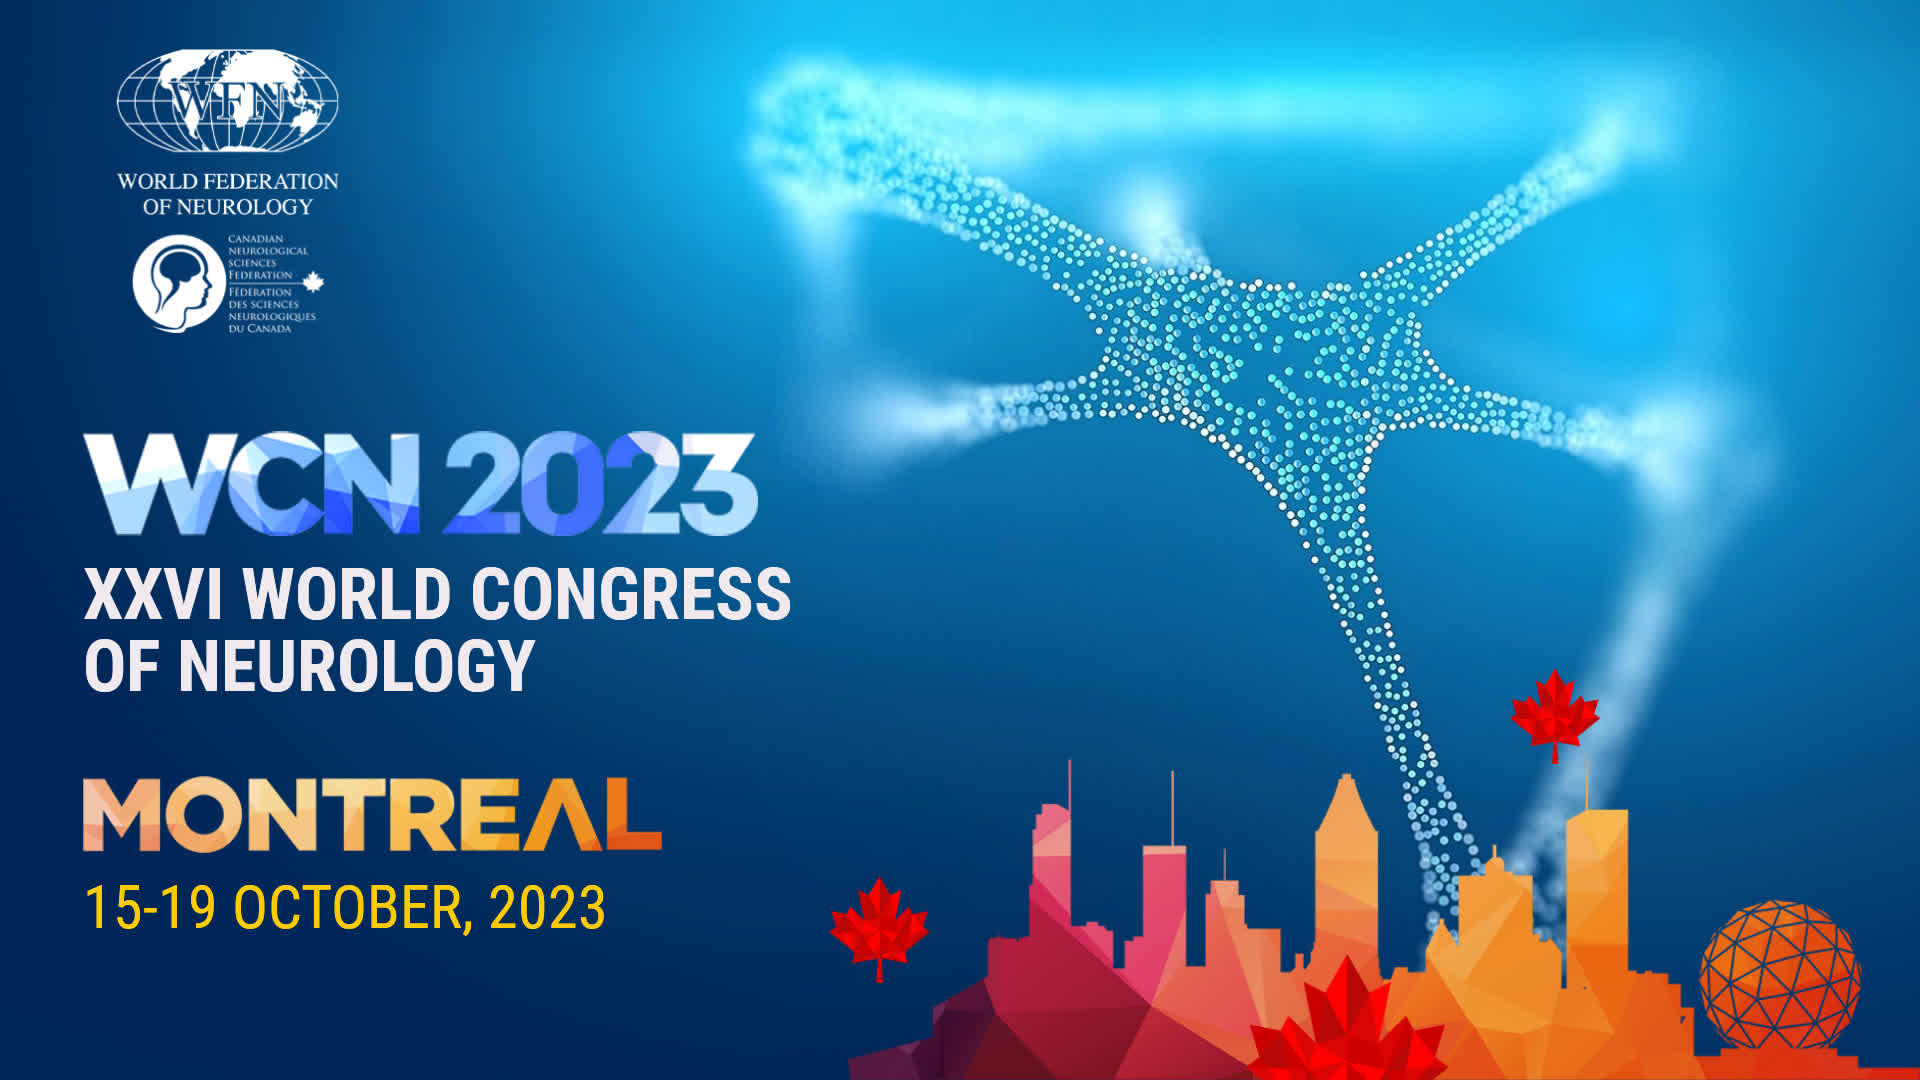 wcn 2023 - xxvi world congress of neurology - Montreal